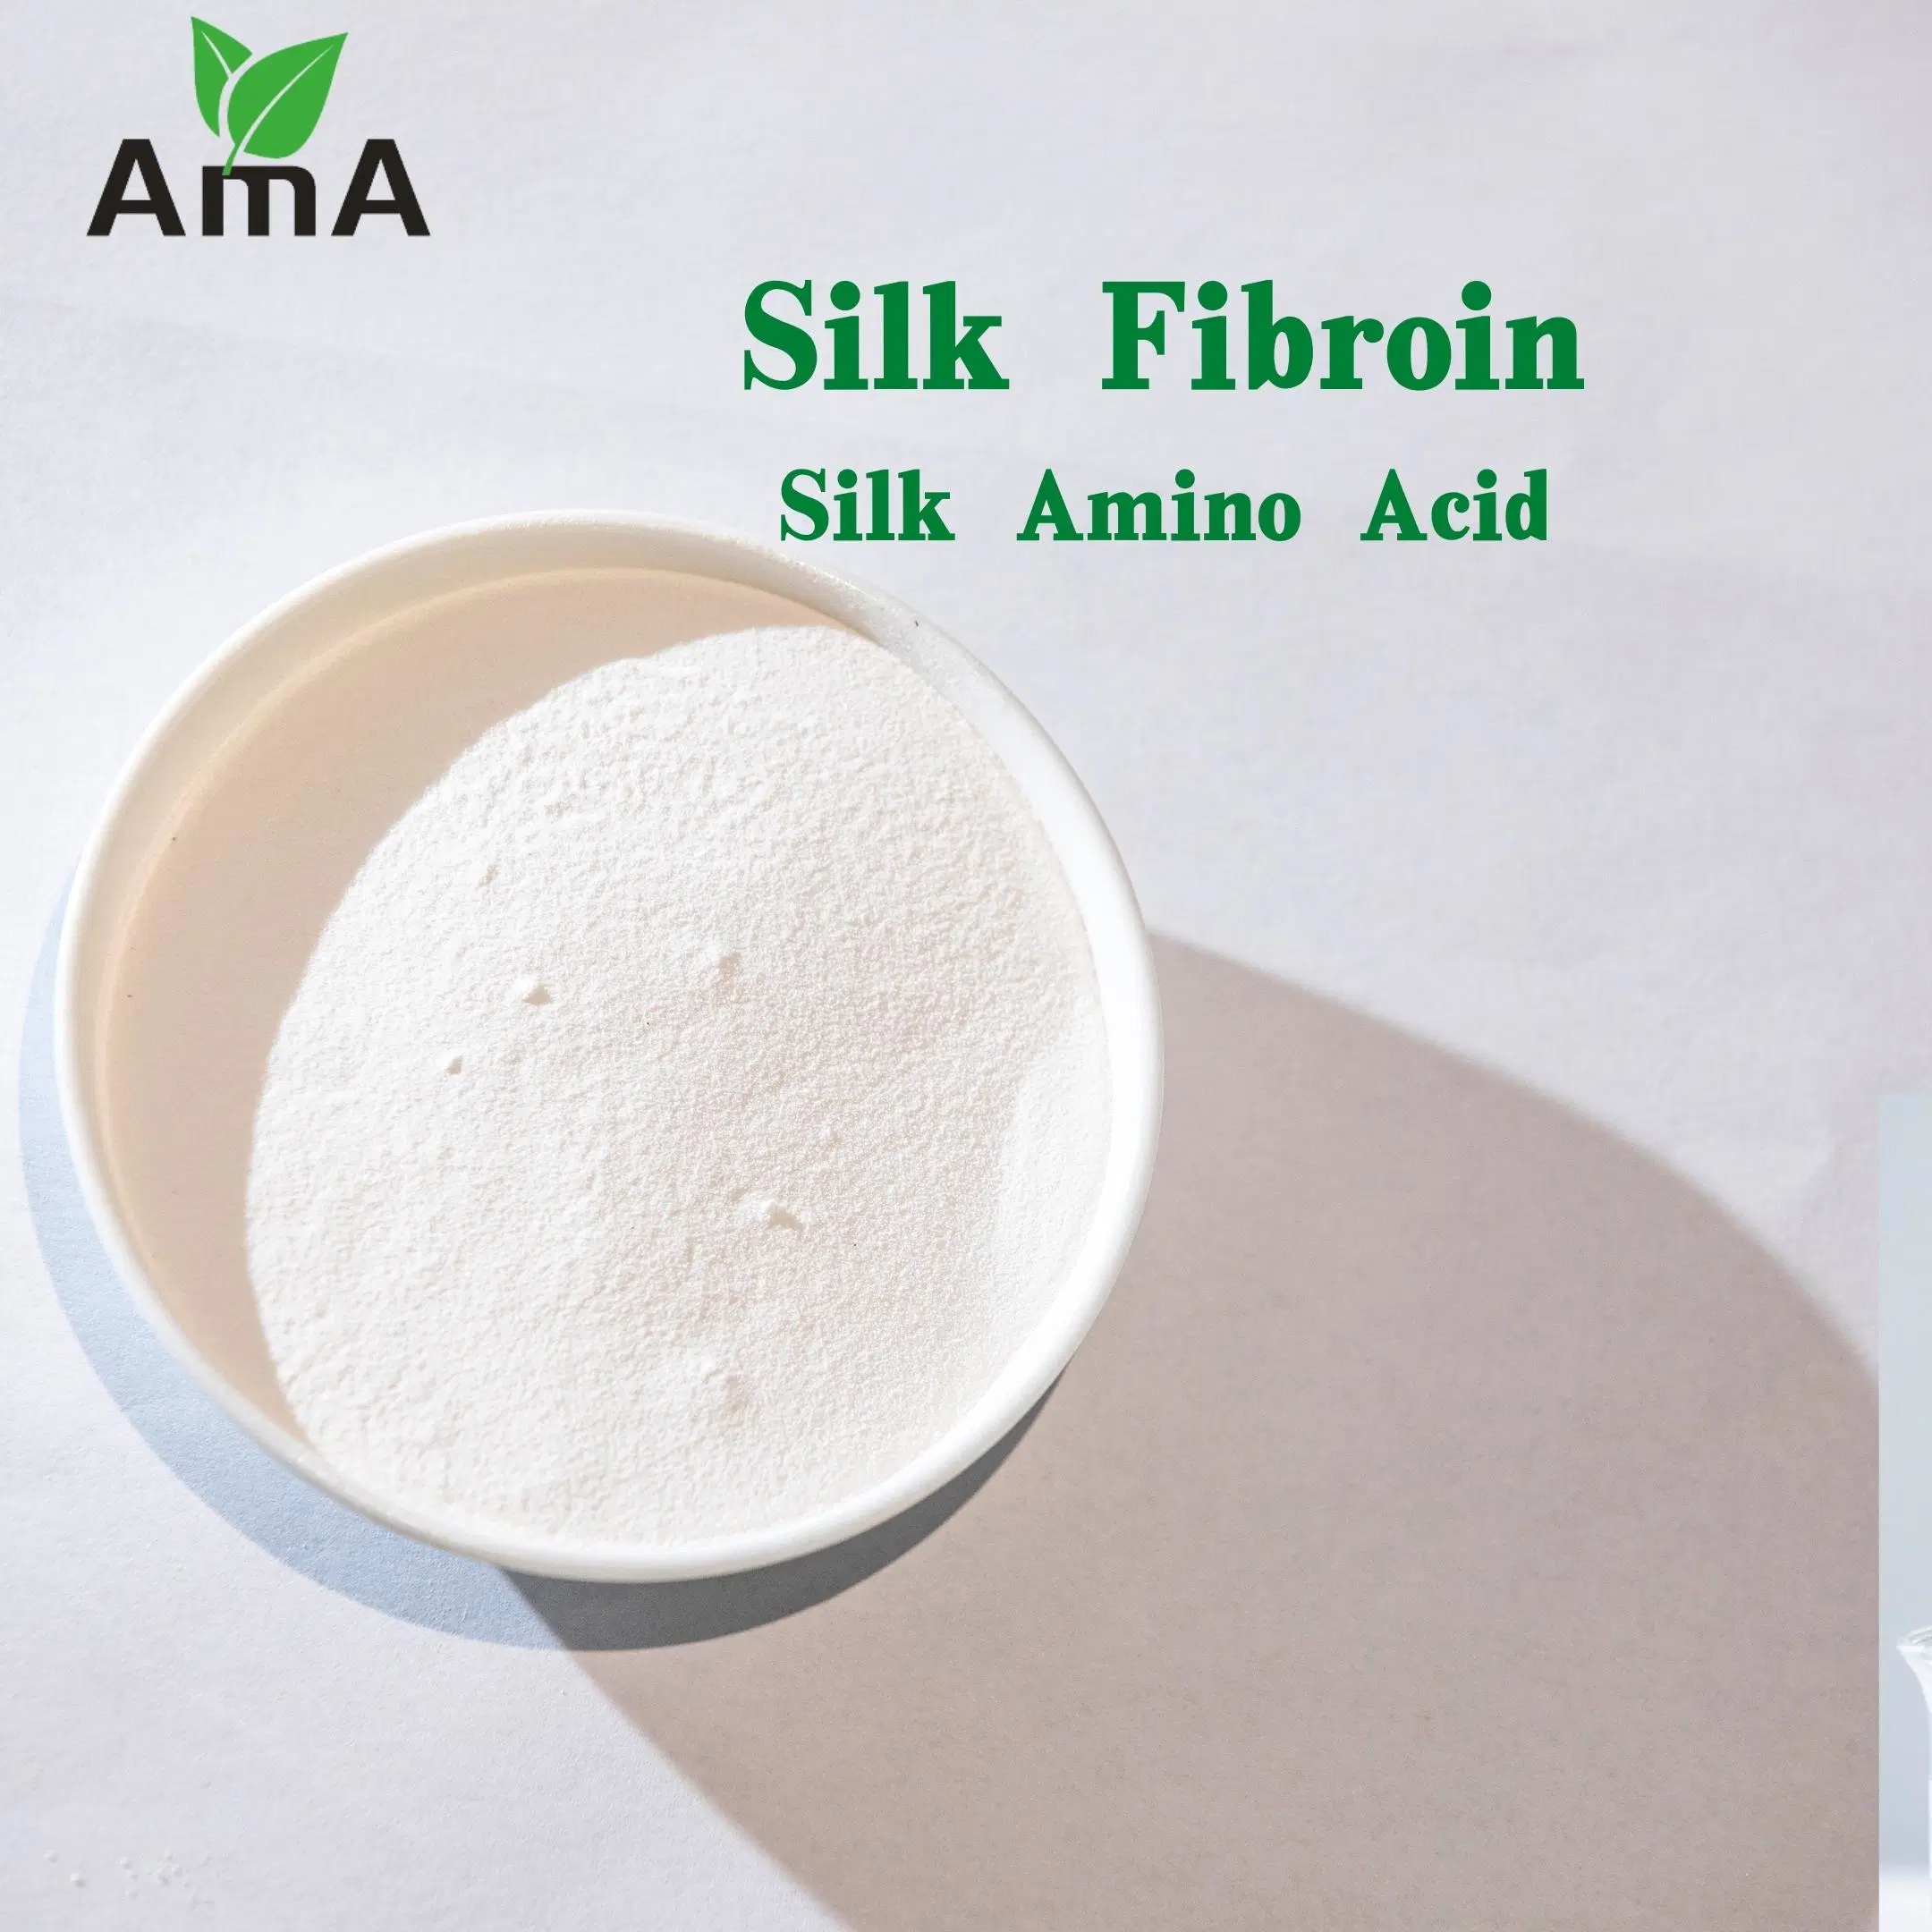 De grado cosmético hidrolizado de proteína en polvo de Seda La seda Fibroin completamente soluble en agua